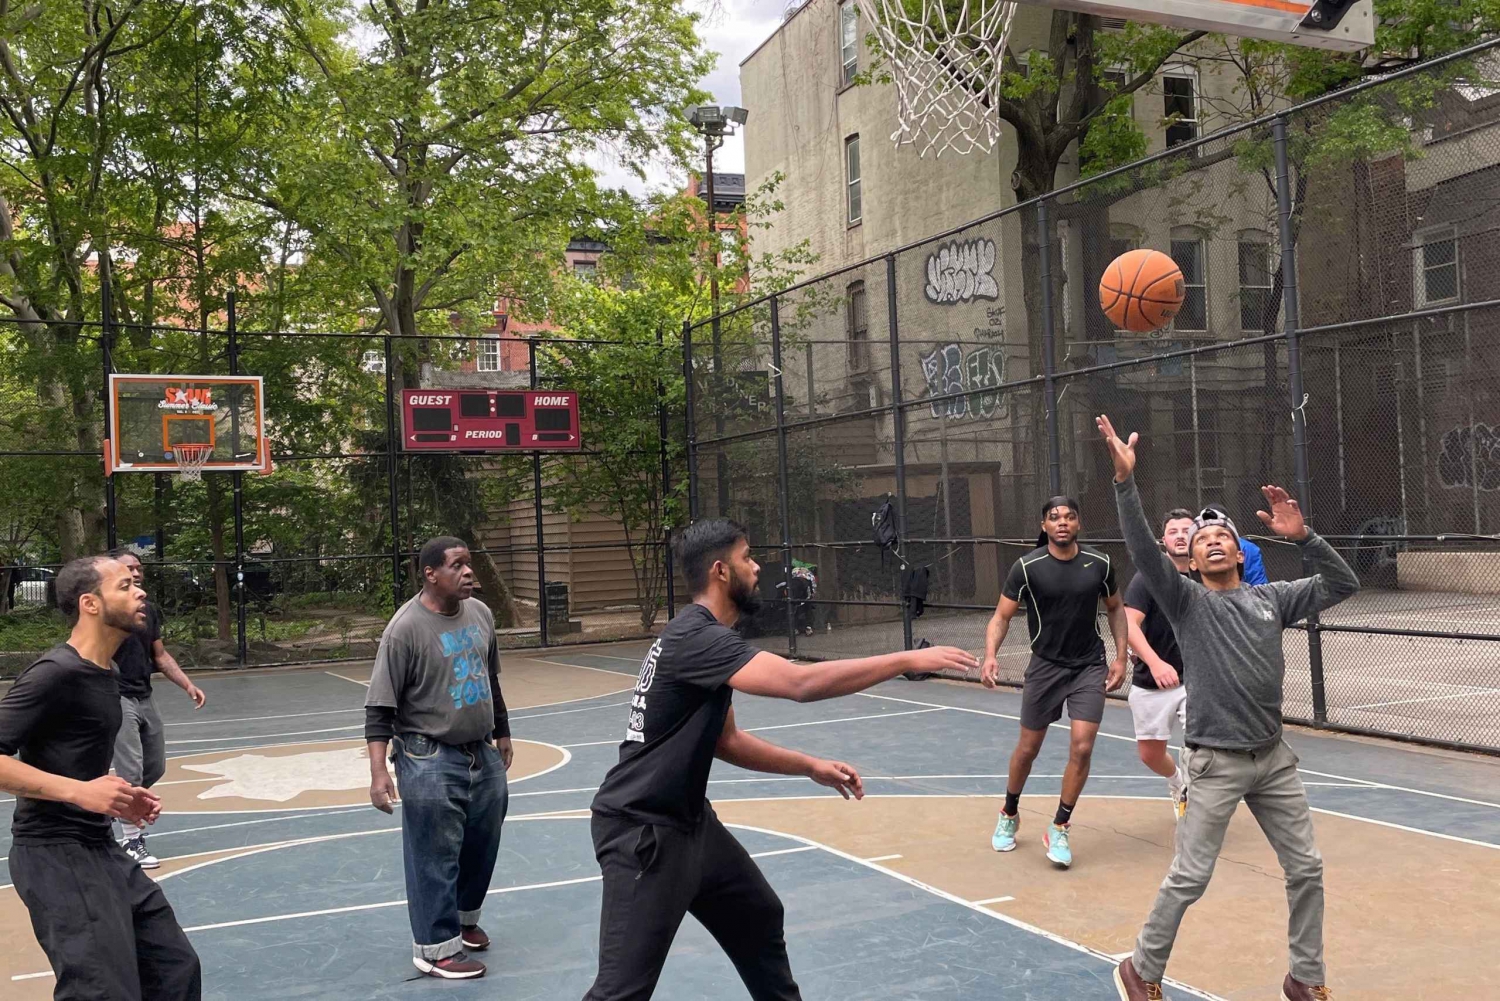 Excursión a pie por el baloncesto de Nueva York